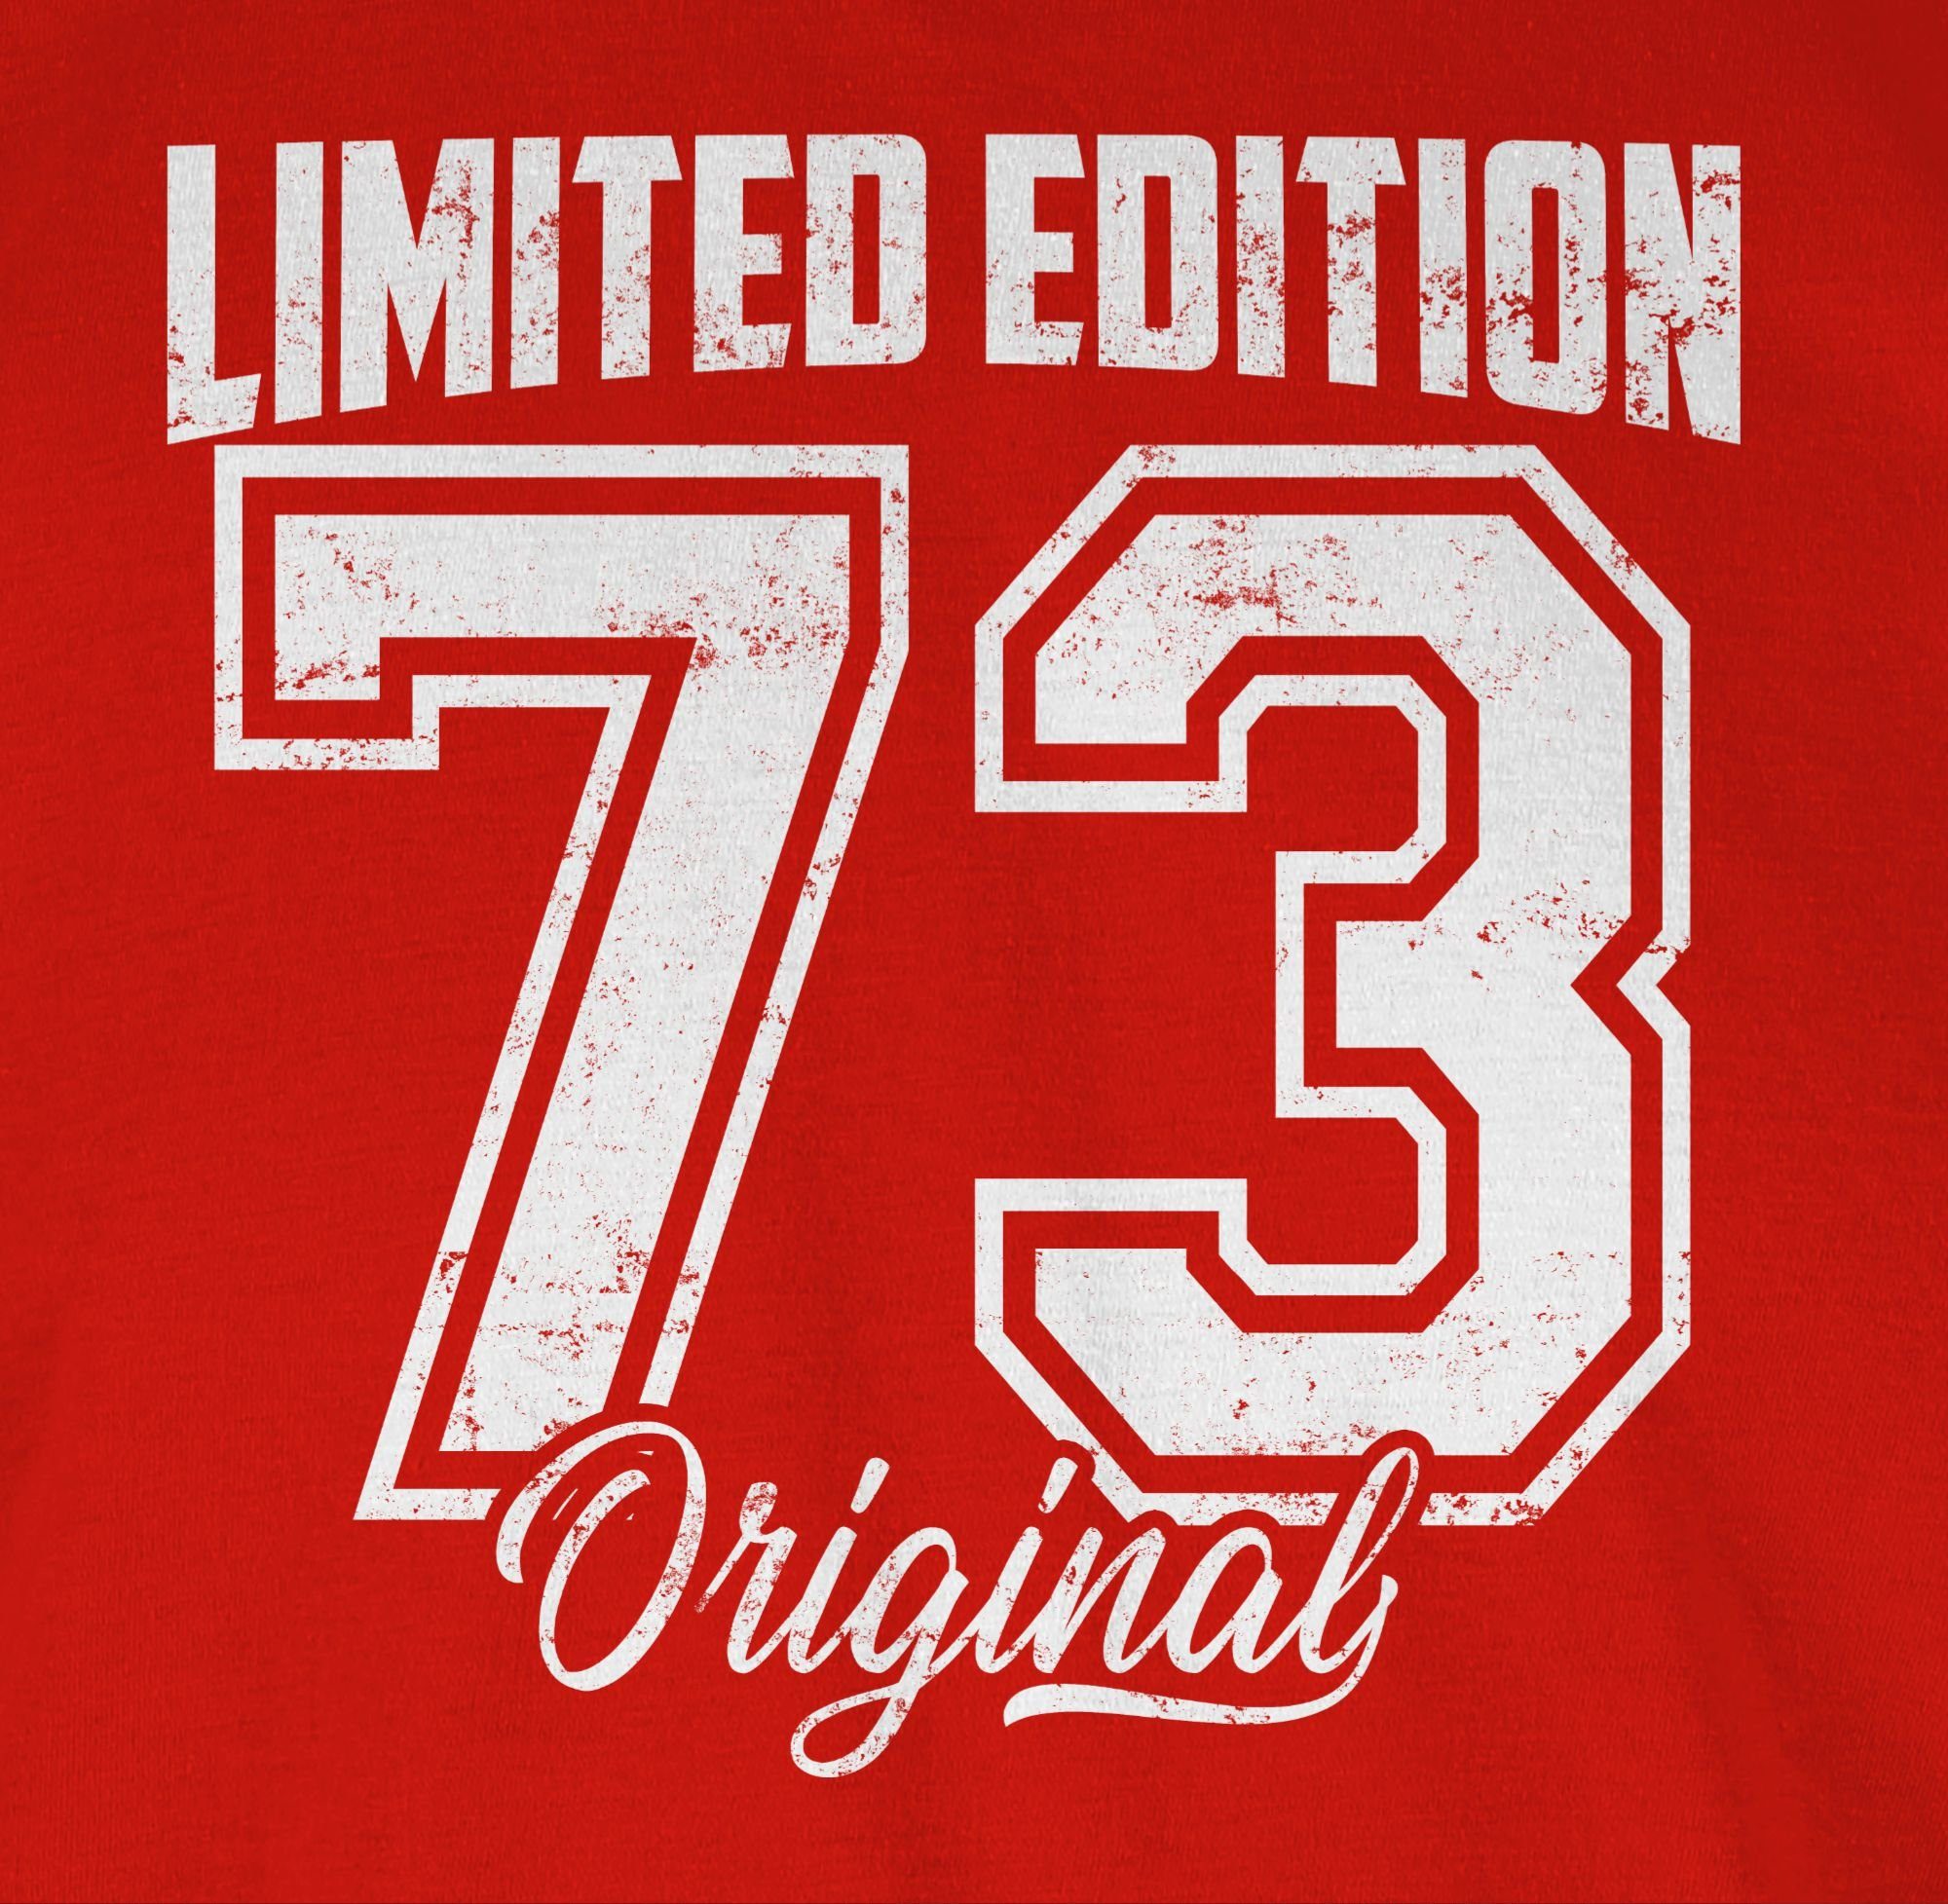 Geburtstag Edition Fünfzigster Shirtracer 50. 1973 Rot Weiß Original 01 Limited T-Shirt Vintage